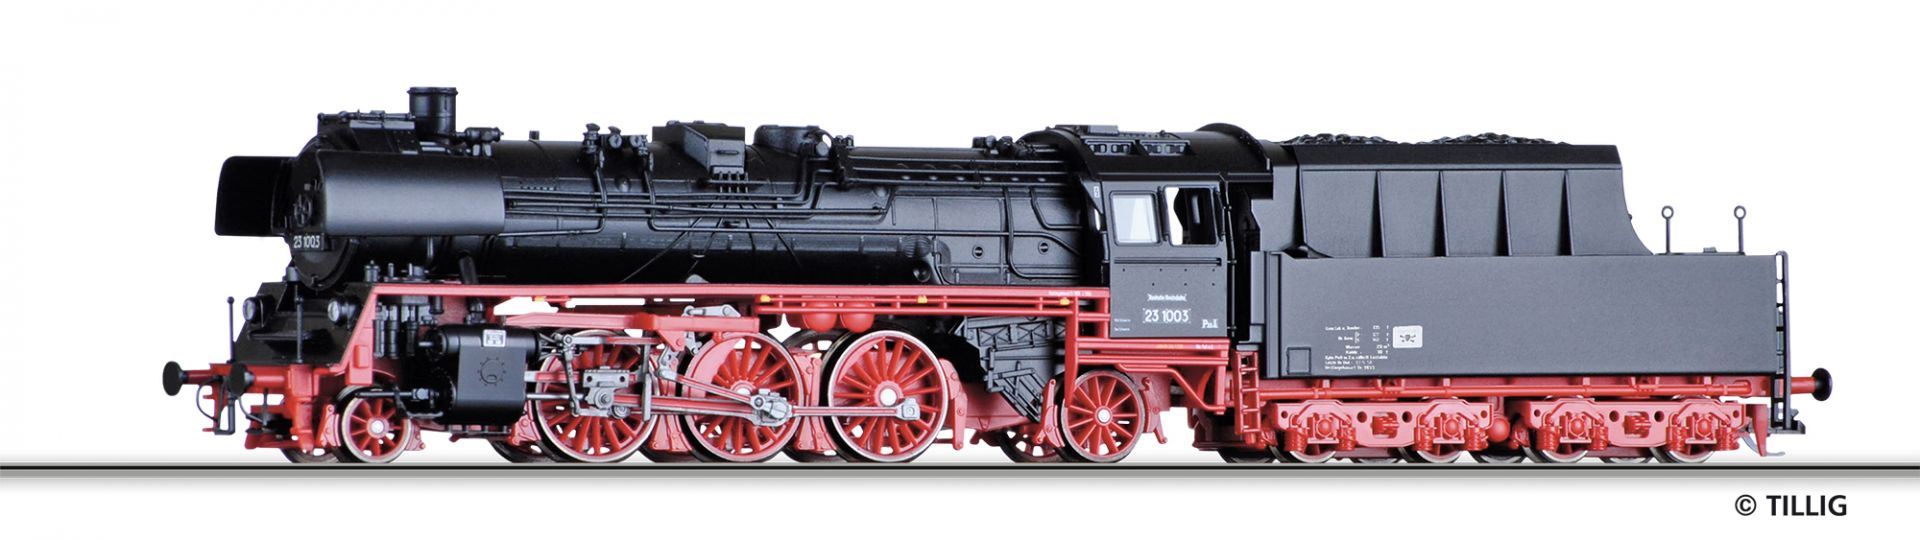 502266 | Steam locomotive DR